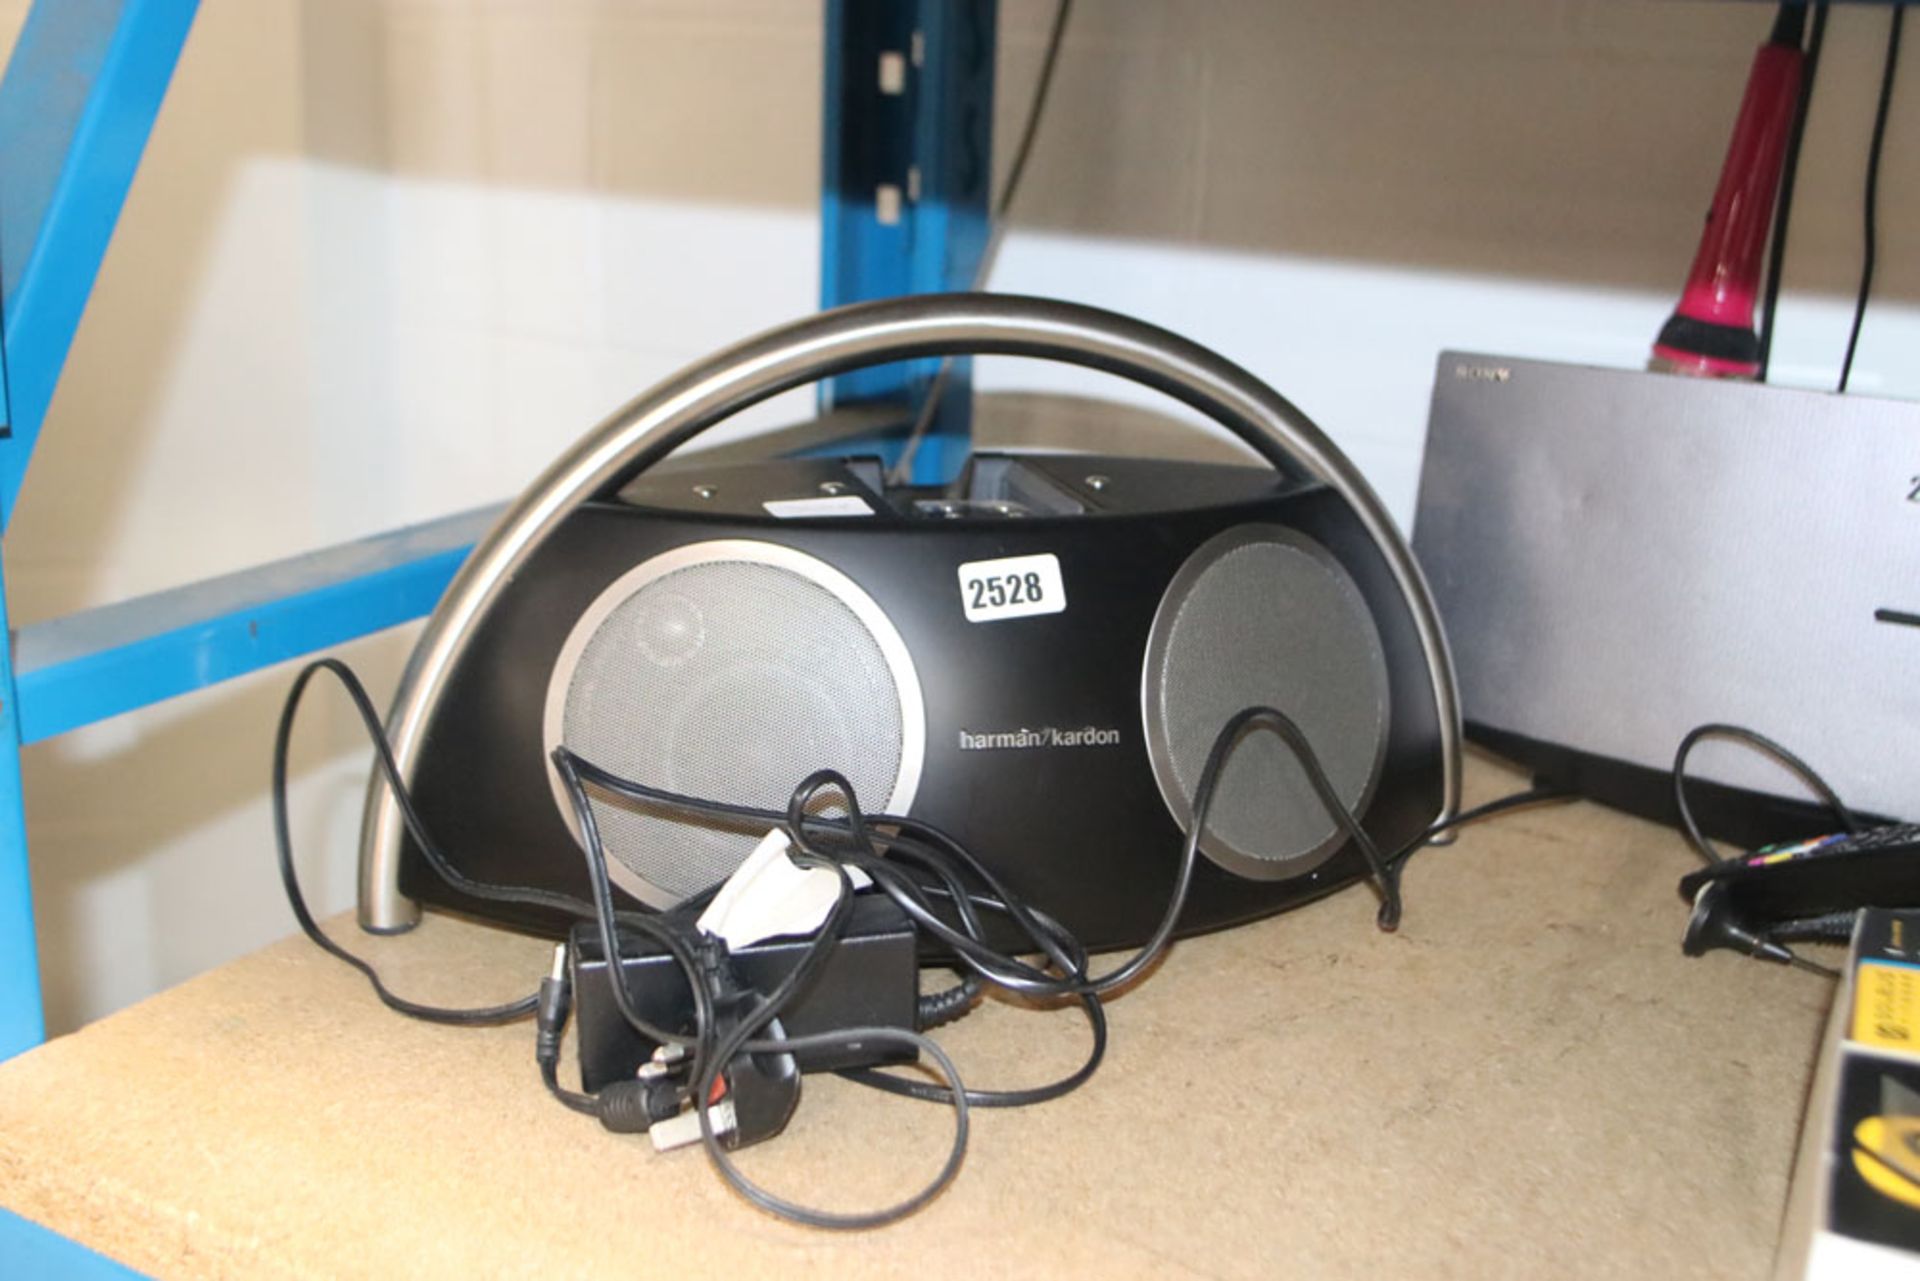 Harmon Kardon portable speaker set with power cable